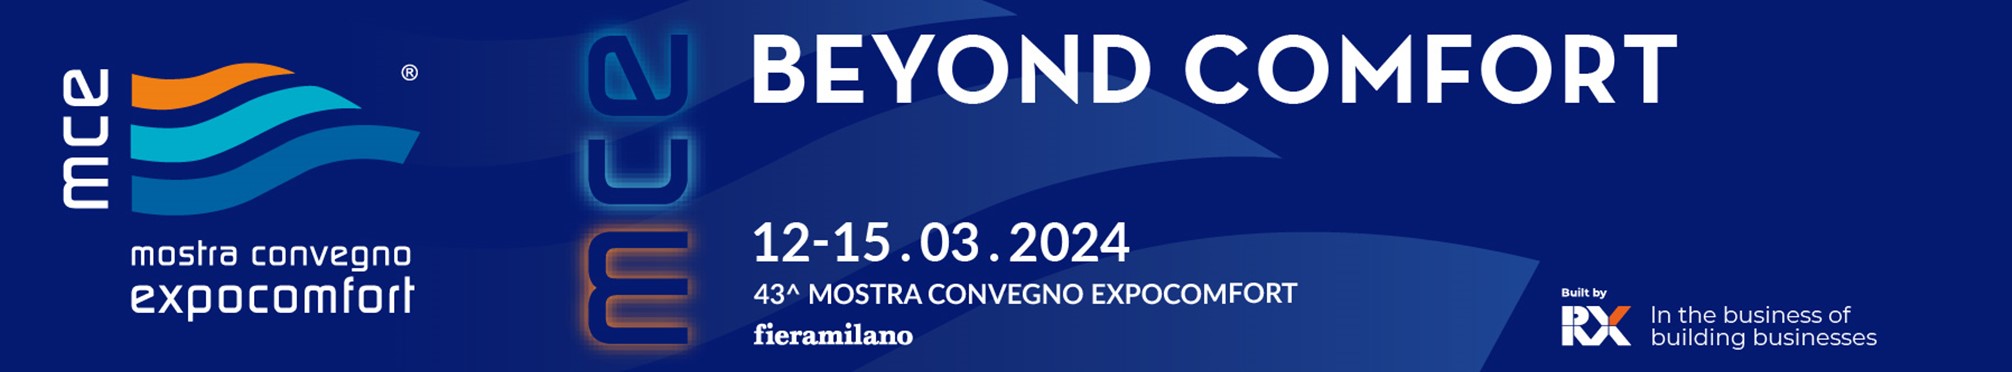 La locandina in formato orizzontale della mostra convegno MCE EXPOCOMFORT 2024 con scritte bianche su sfondo blu. In basso le date 12.5.032024 e il logo di RX 